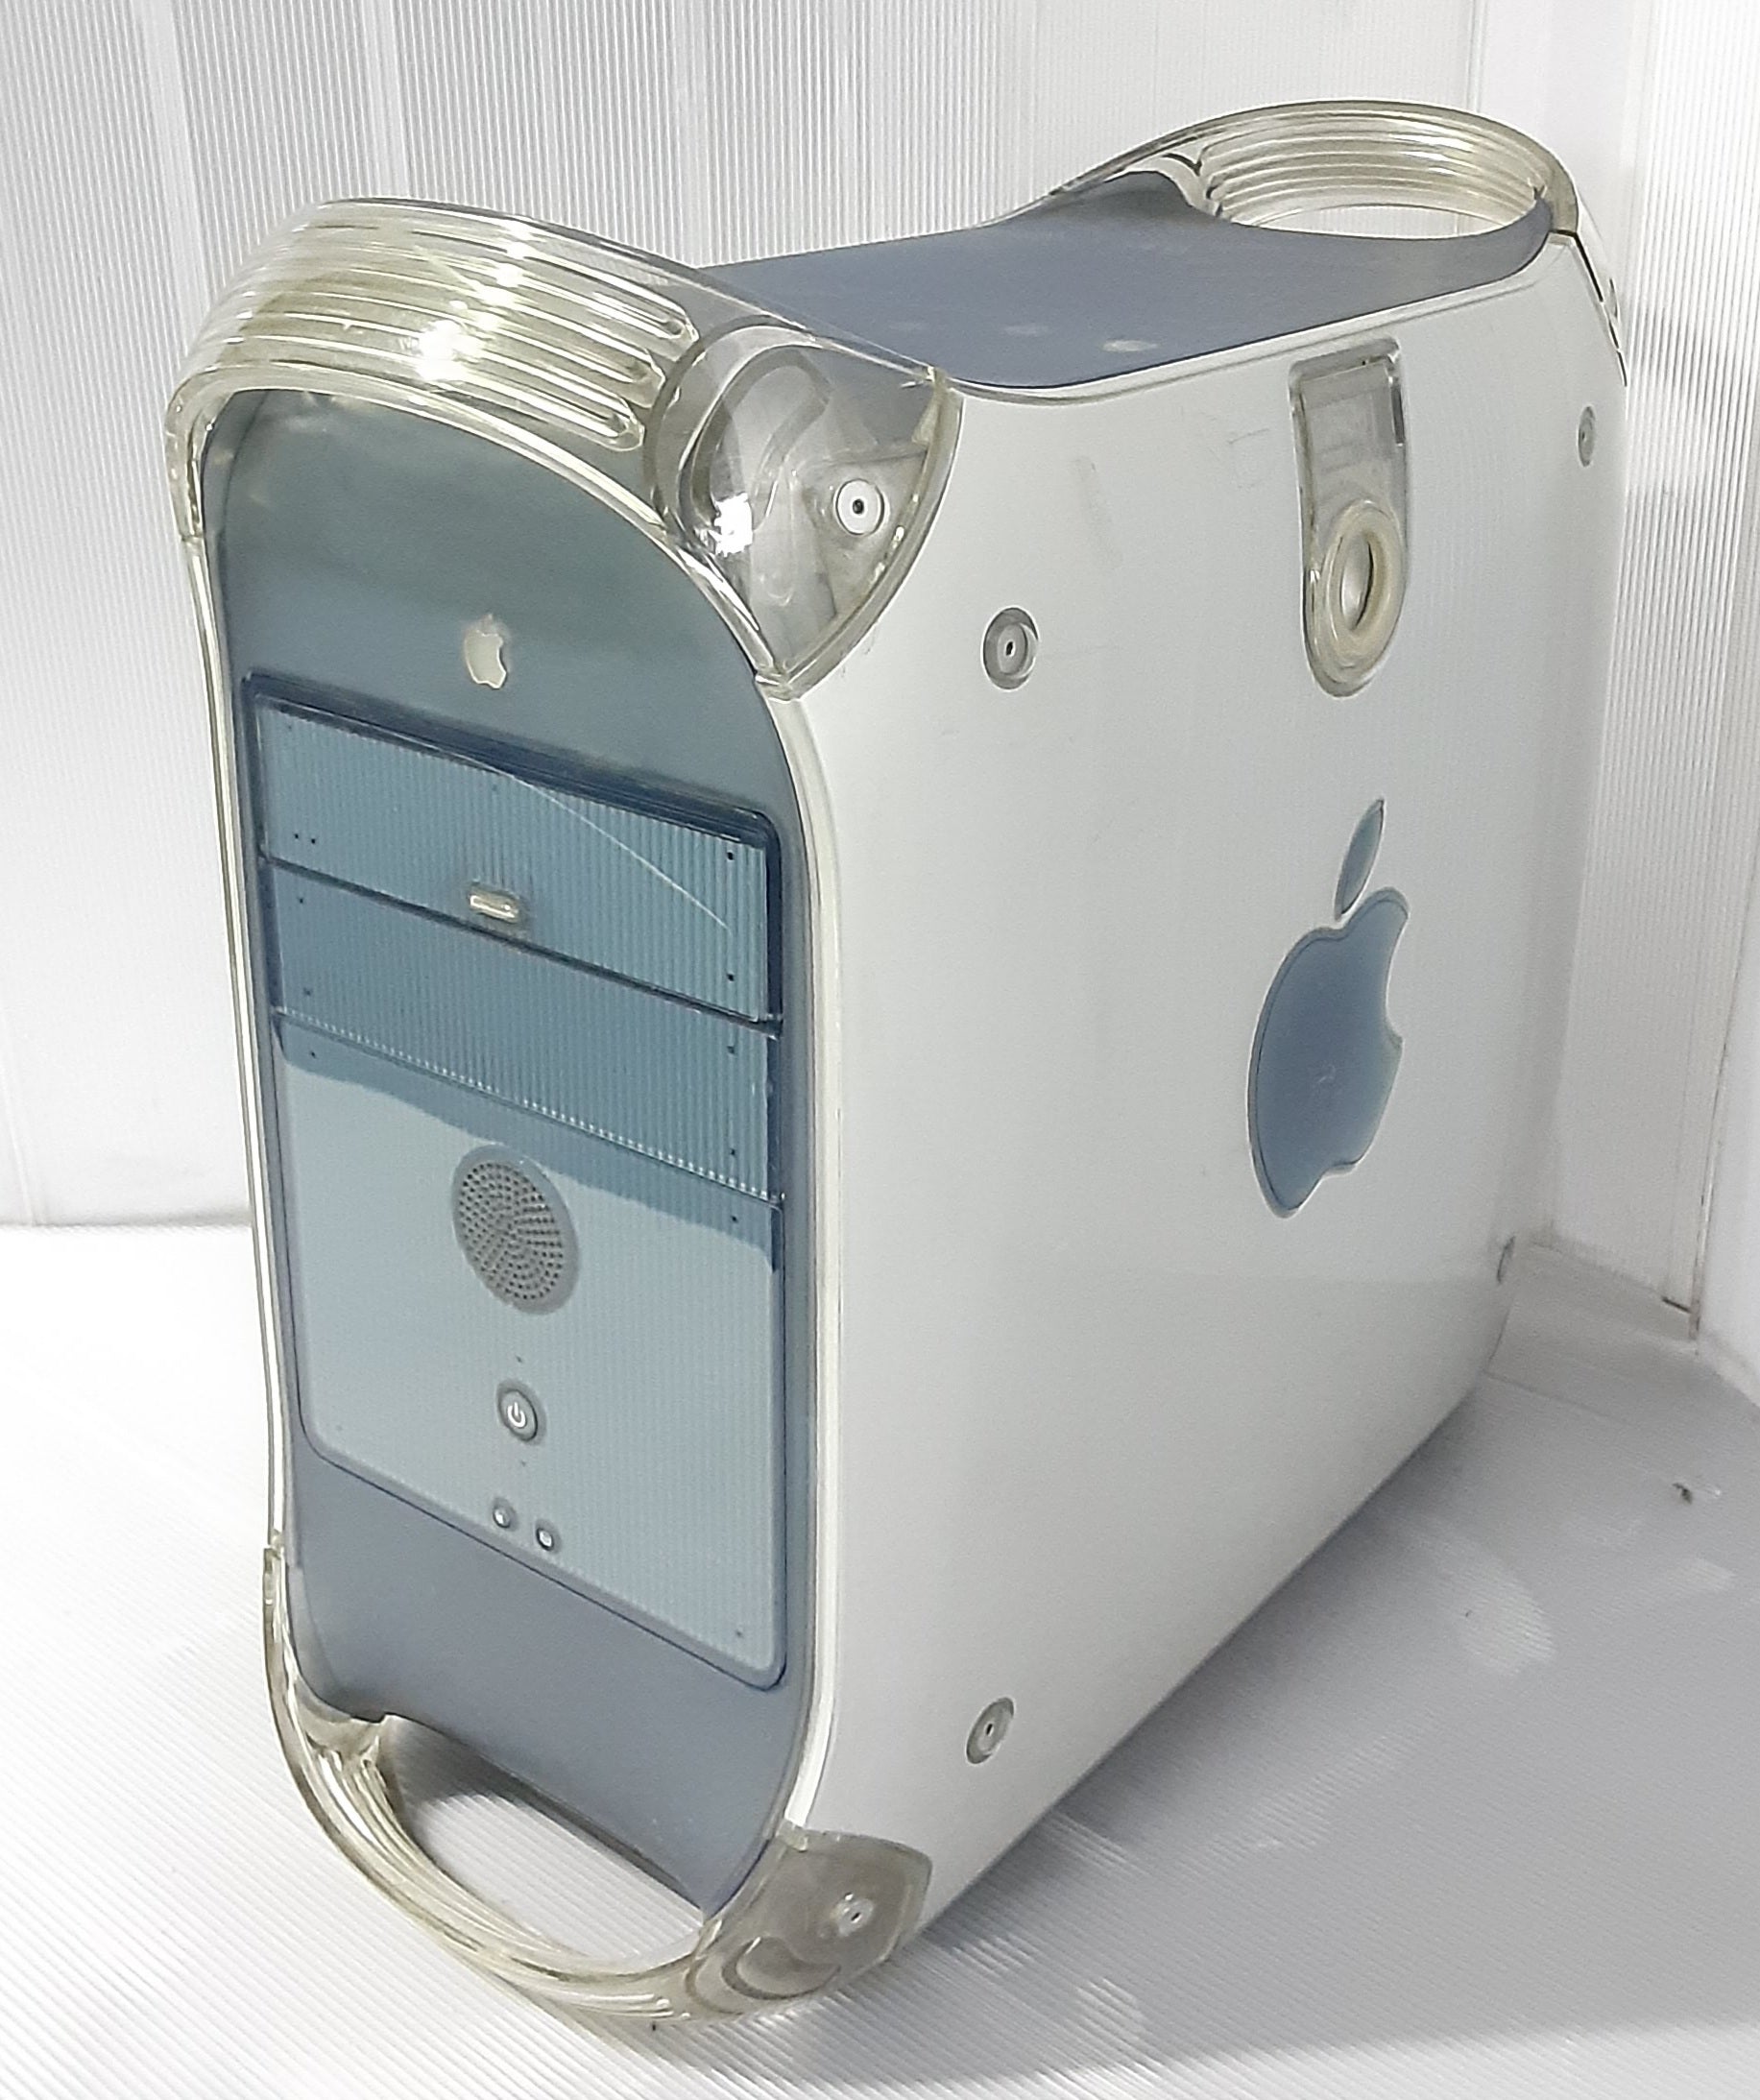 中古 本体のみ HD抜き仕様 アップル(Apple) Power Mac G4 パソコン